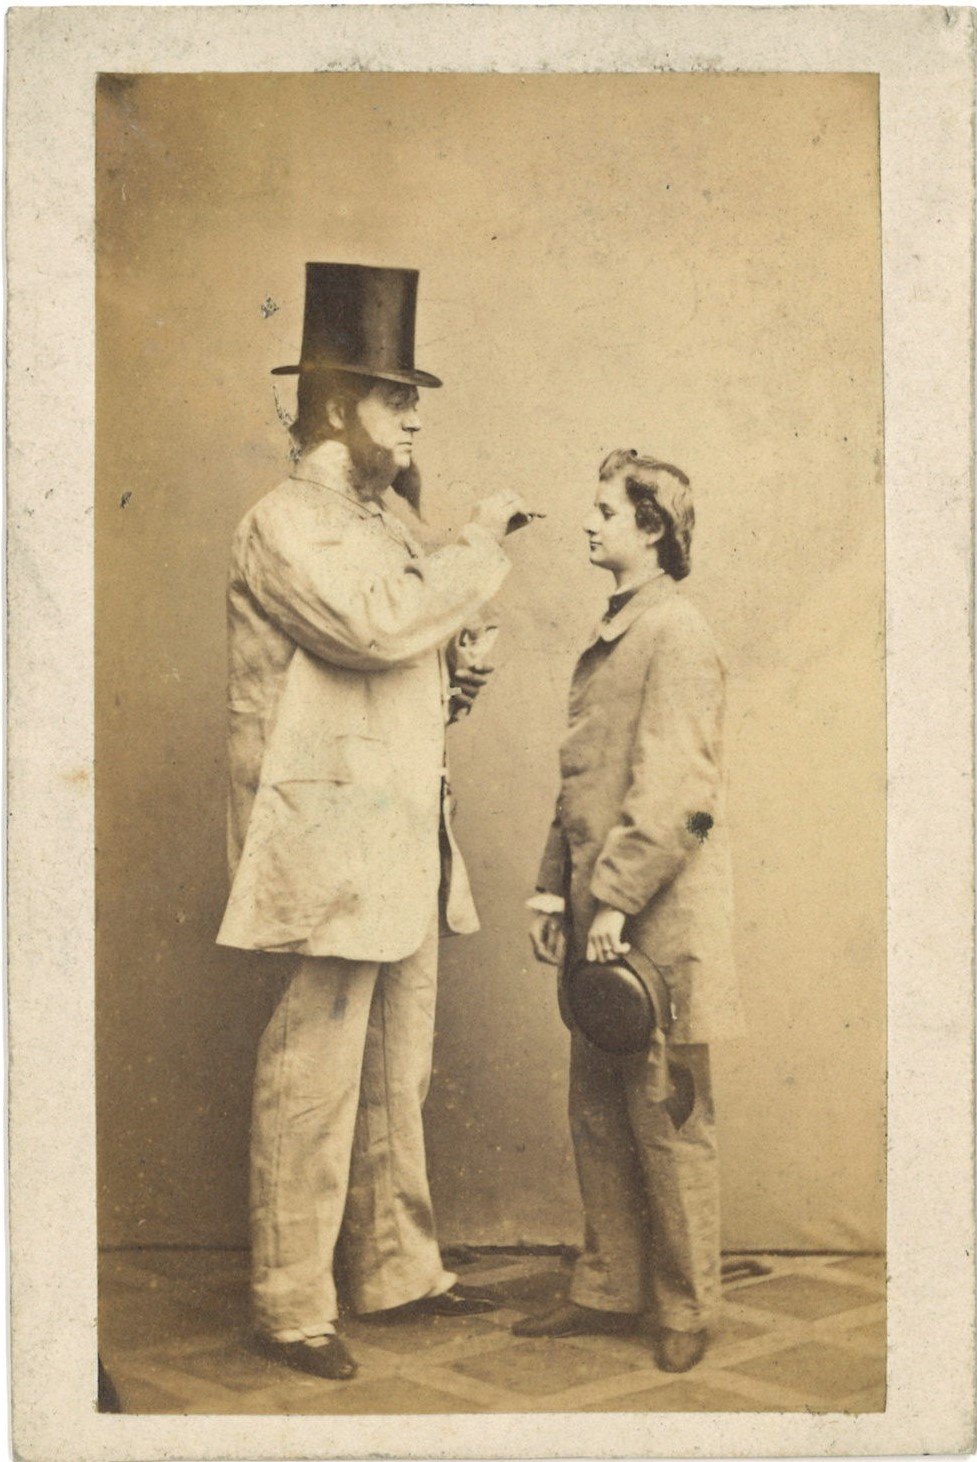 Reusche, Theodor (1826-1881), Schauspieler, und Frl. Henke (Landesgeschichtliche Vereinigung für die Mark Brandenburg e.V., Archiv CC BY)